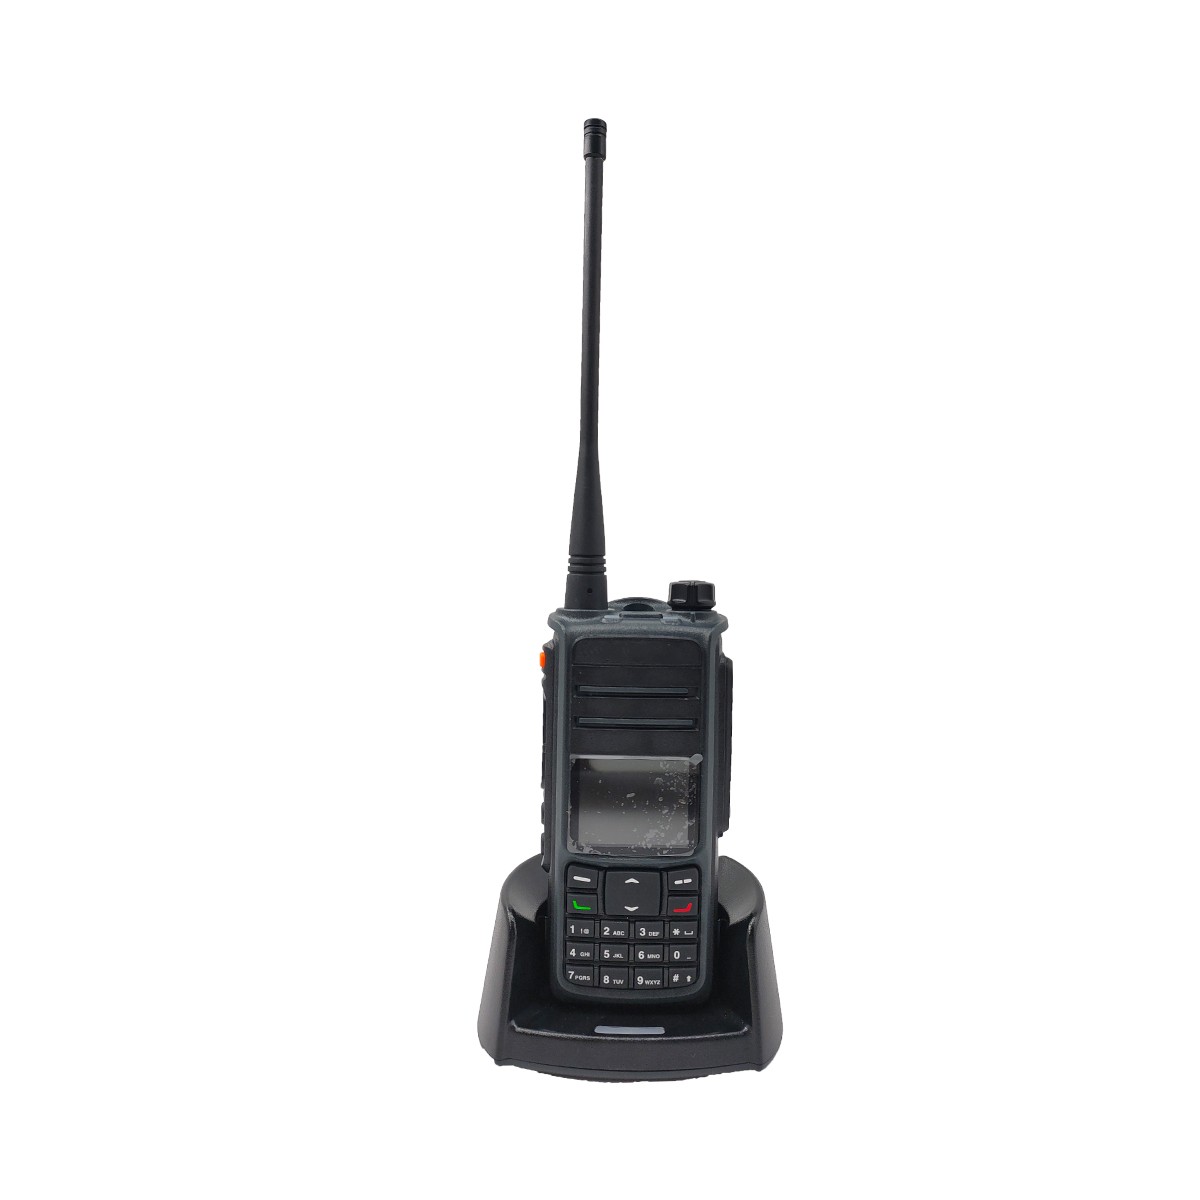 QYT digitale dmr analoge dual mode gps walkie talkie UV-D67H
